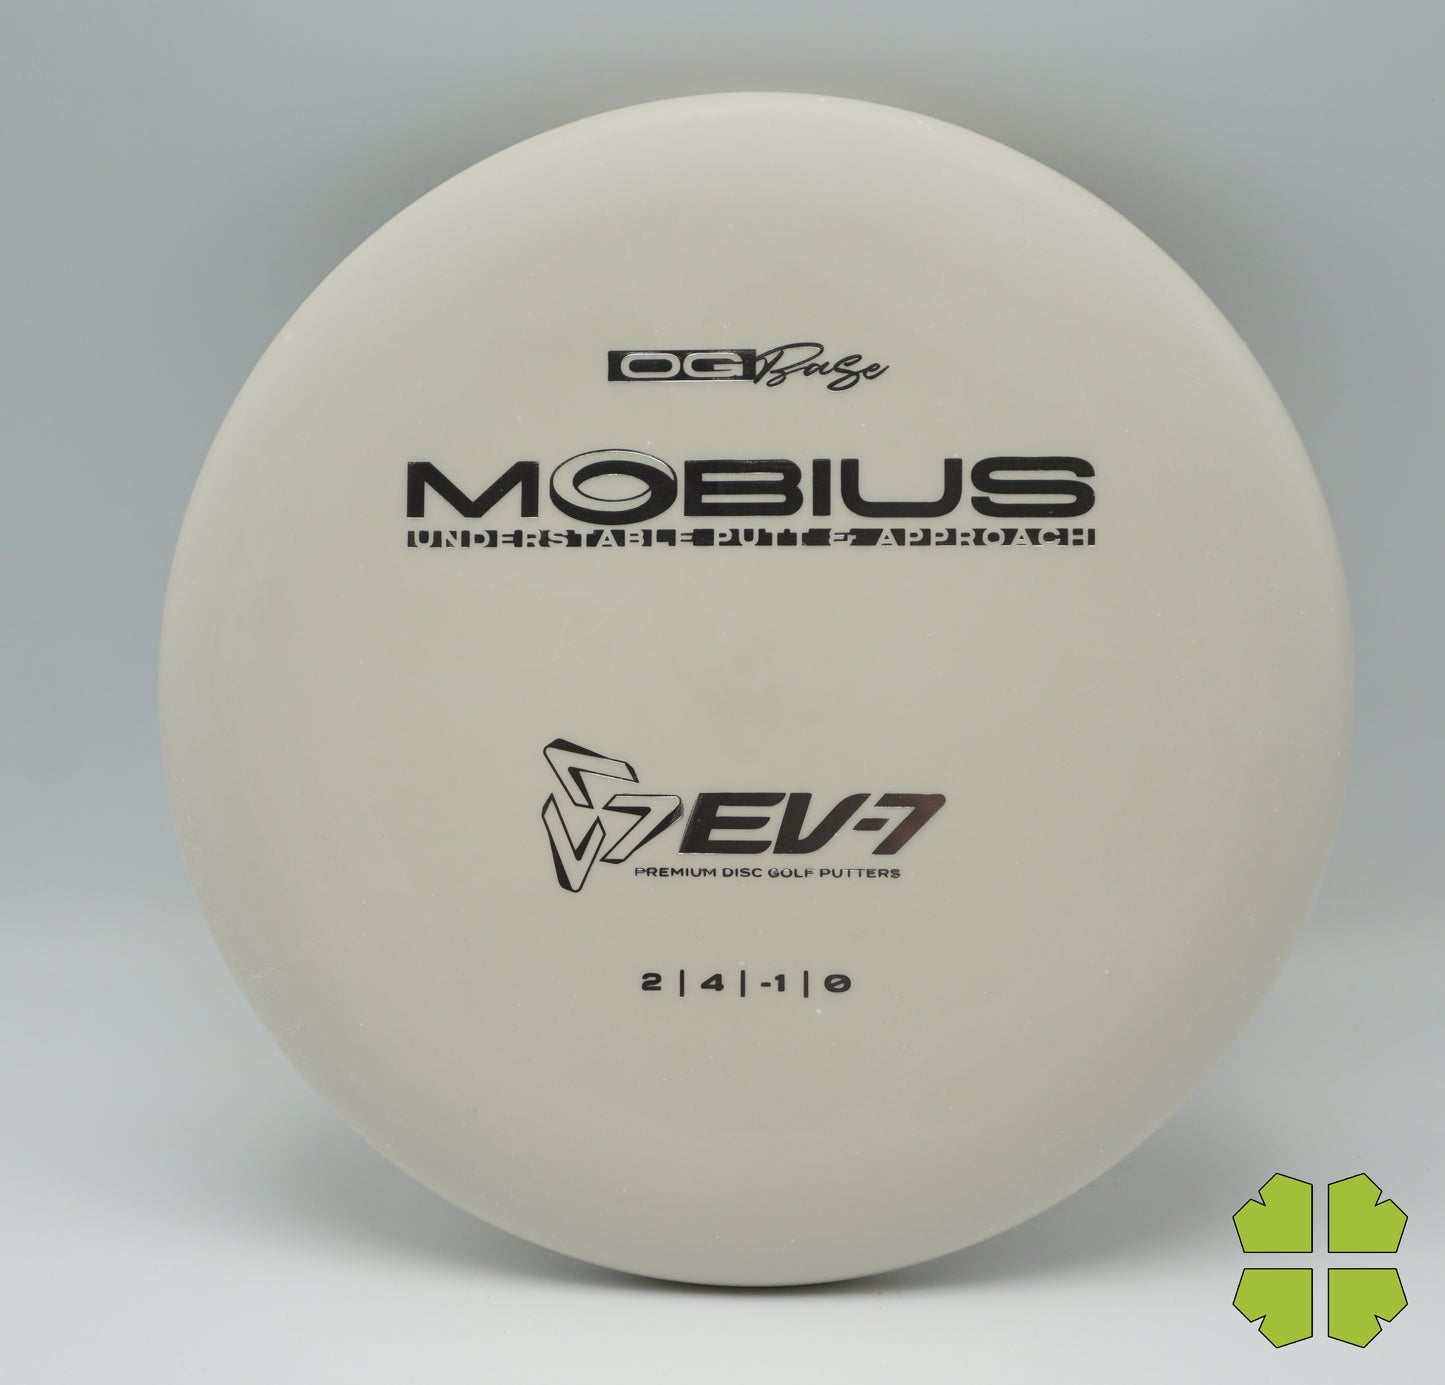 EV-7 Mobius OG Base 174g